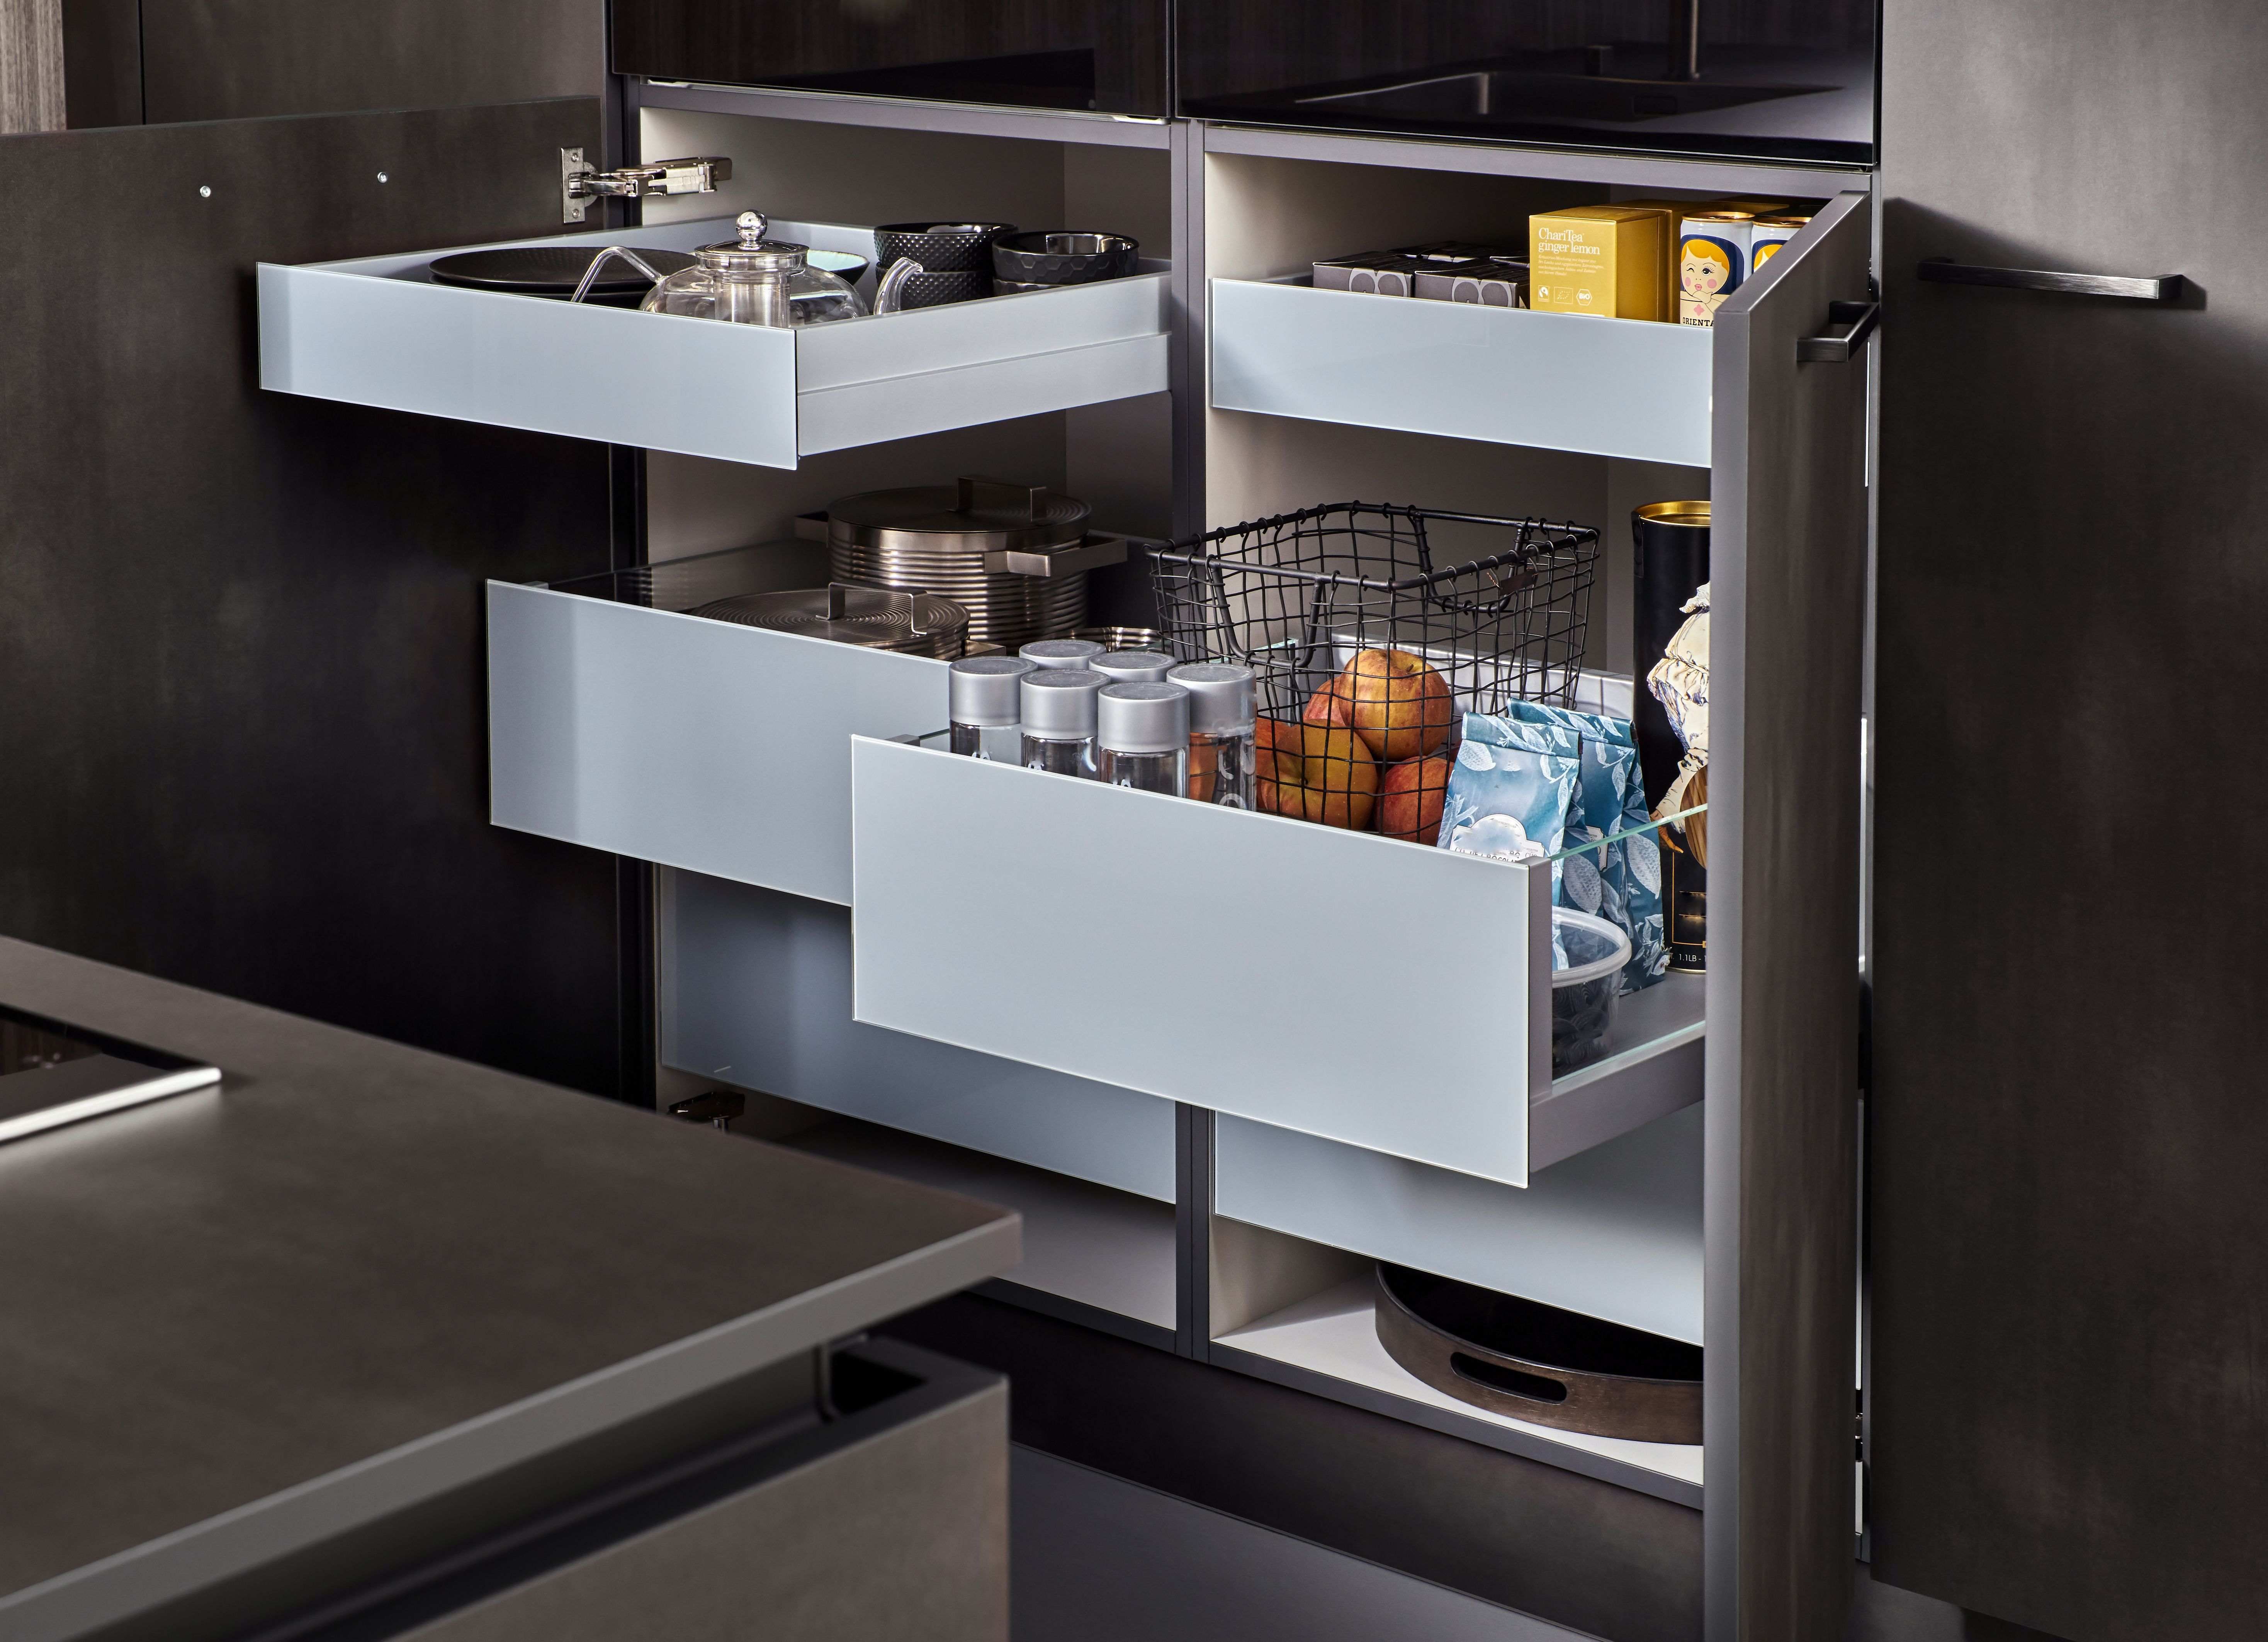 Cómo distribuir el interior de los muebles de cocina?